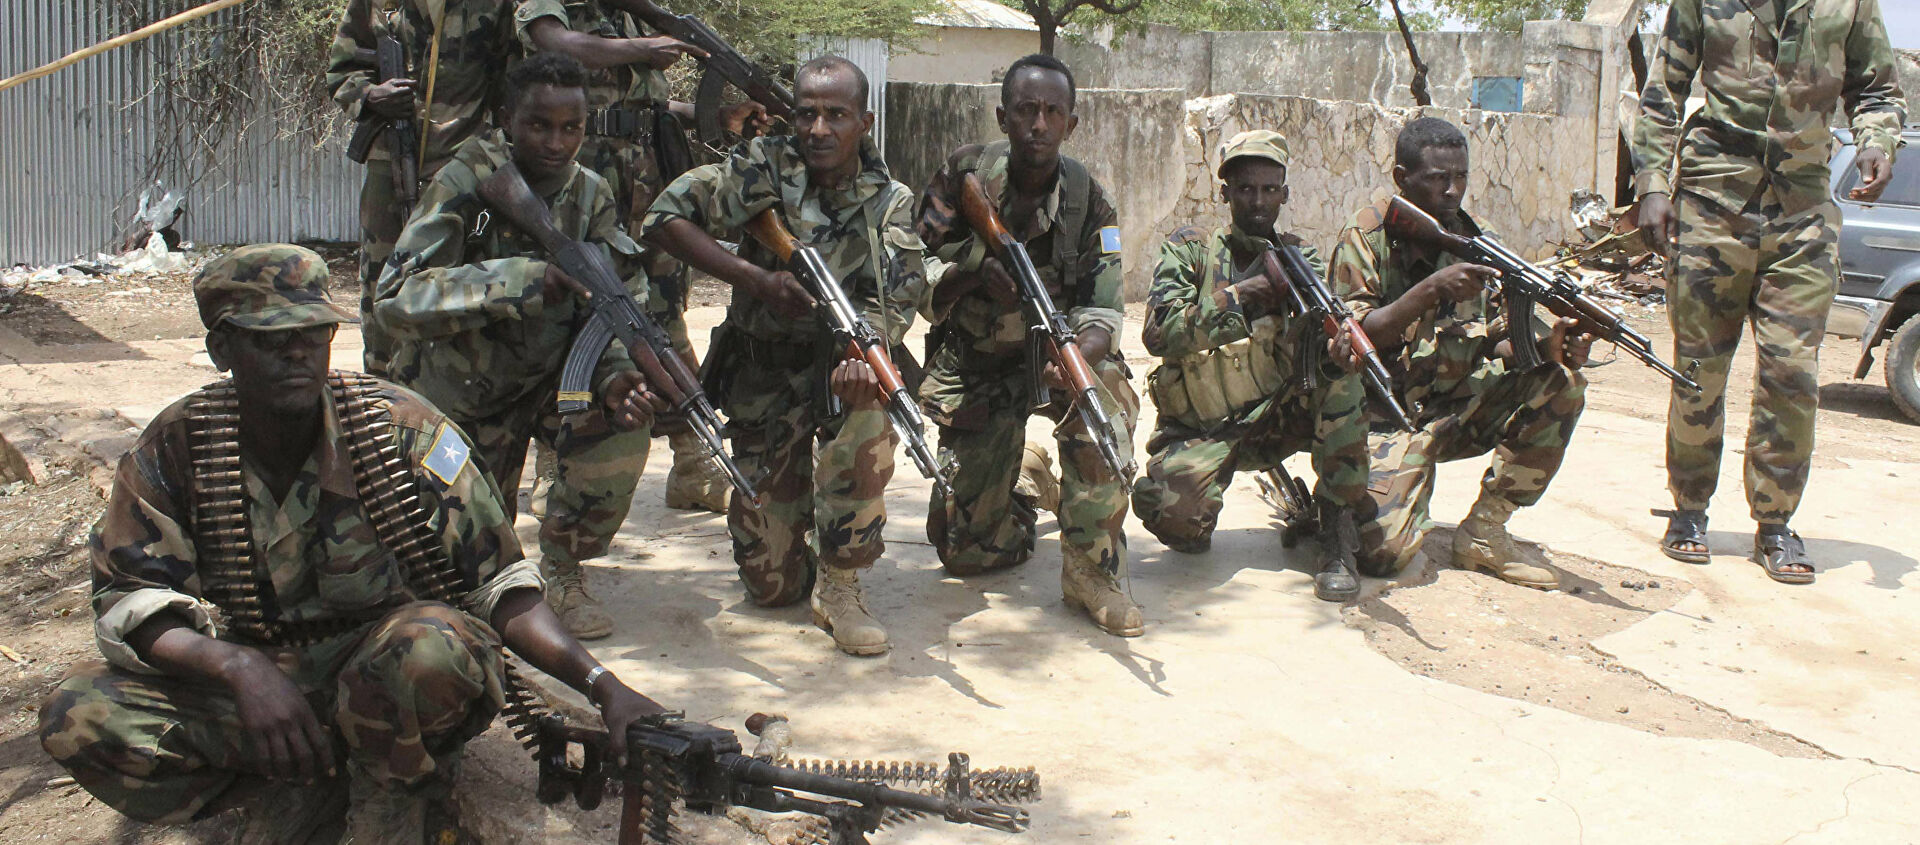 , قتلى وجرحى من قوات الجيش الصومالي في هجوم على قاعدة عسكرية شمال مقديشو